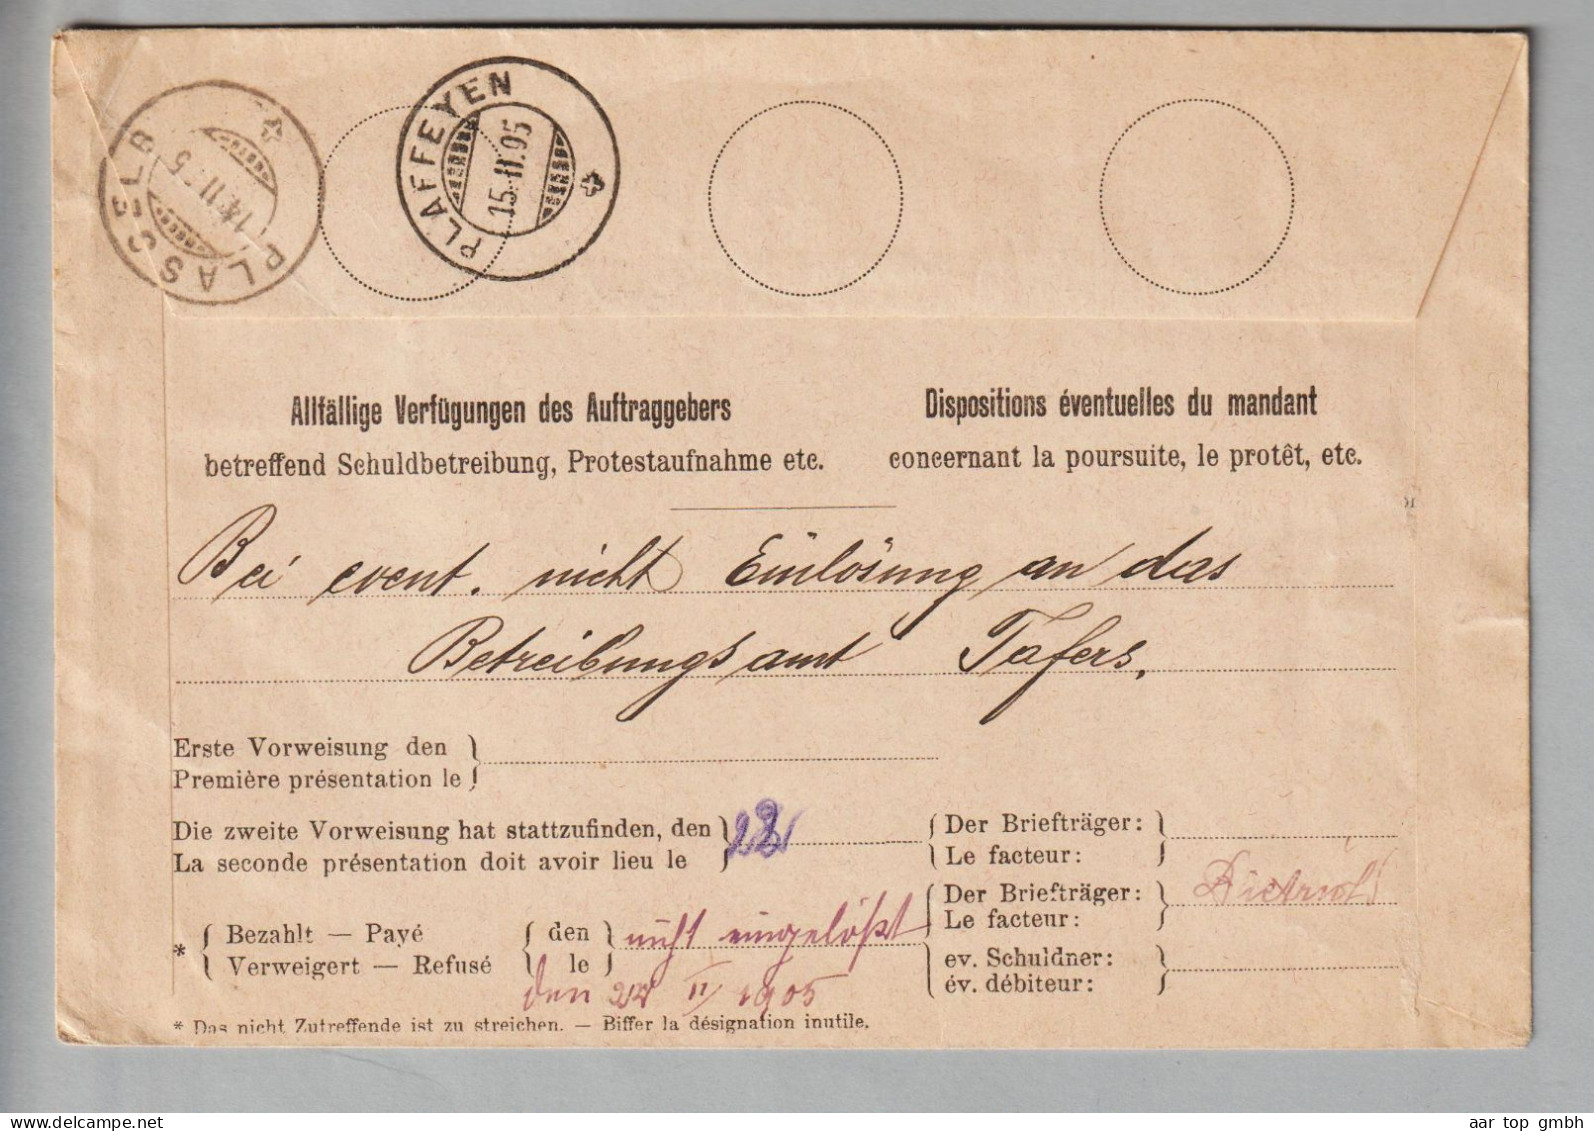 CH Heimat FR Fribourg 1905-02-14 Einzugsmandat Mit 20Rp Stehende H.+ 5Rp. Wertziffer - Briefe U. Dokumente